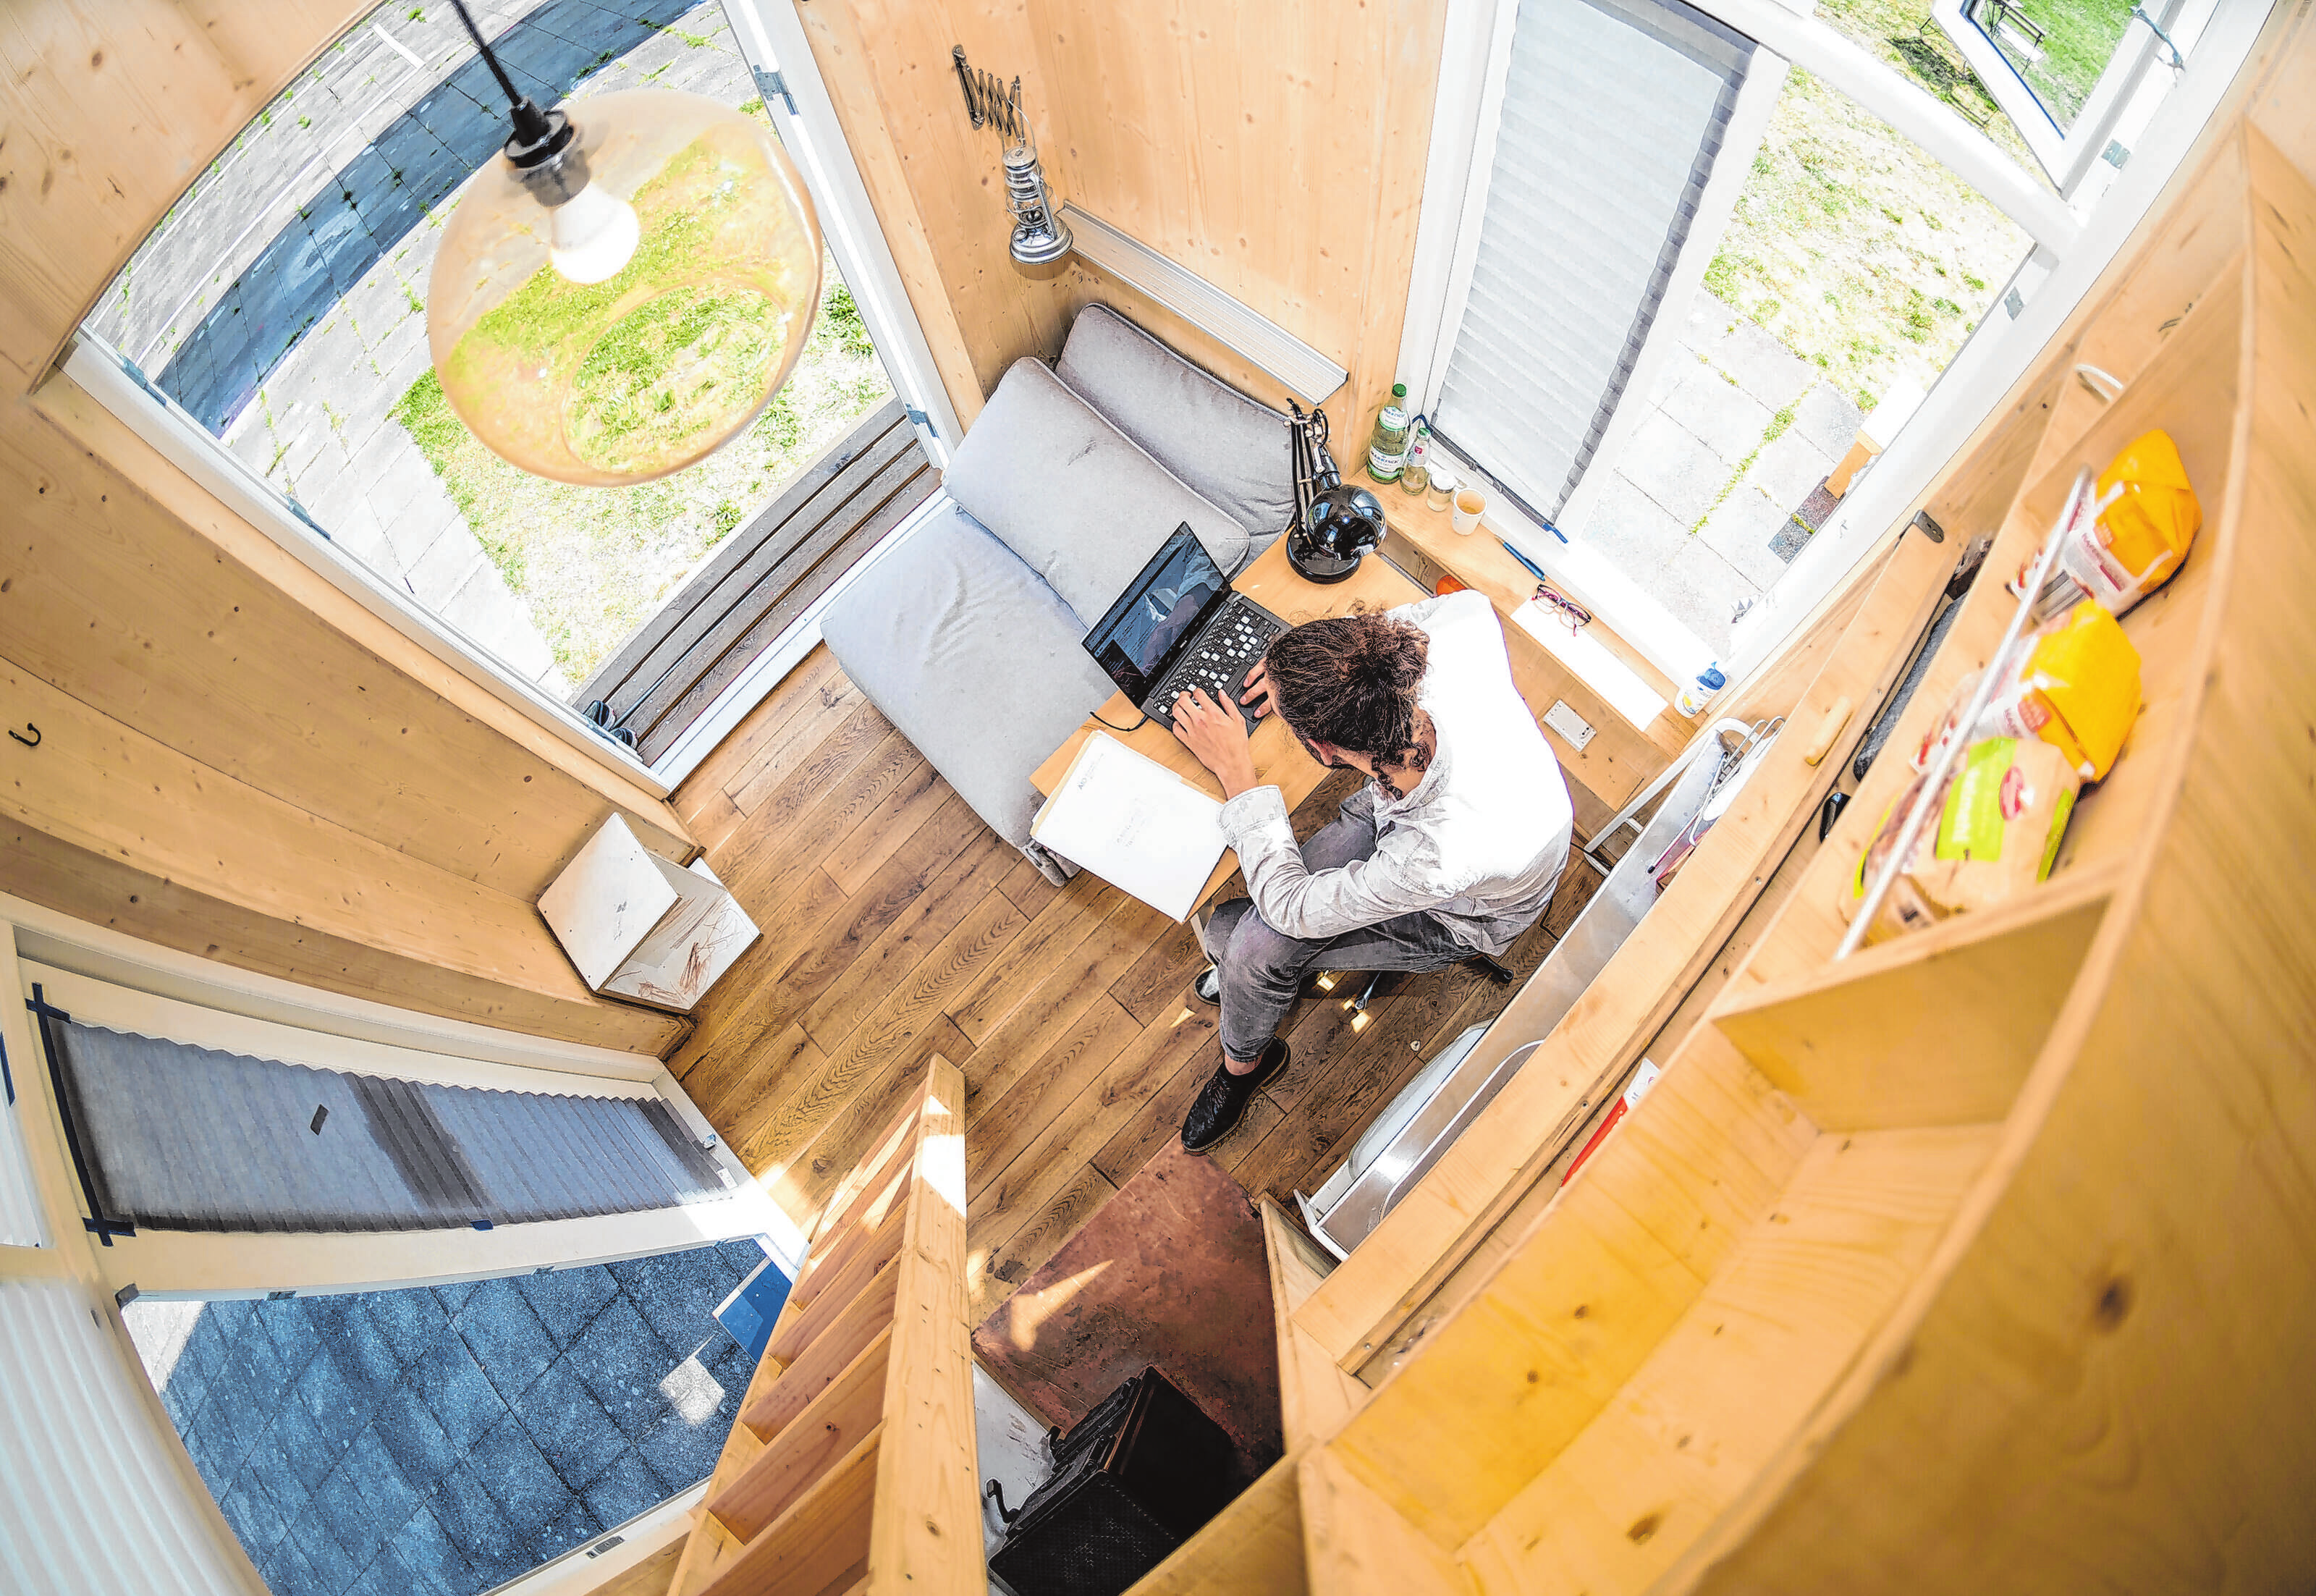 Leben und arbeiten in einem Mini-Häuschen: Ein Tiny House kann eine Antwort auf den Raummangel und steigende Immobilien-Preise in den Innenstädten sein. Foto: Alexander Heinl/dpa-mag